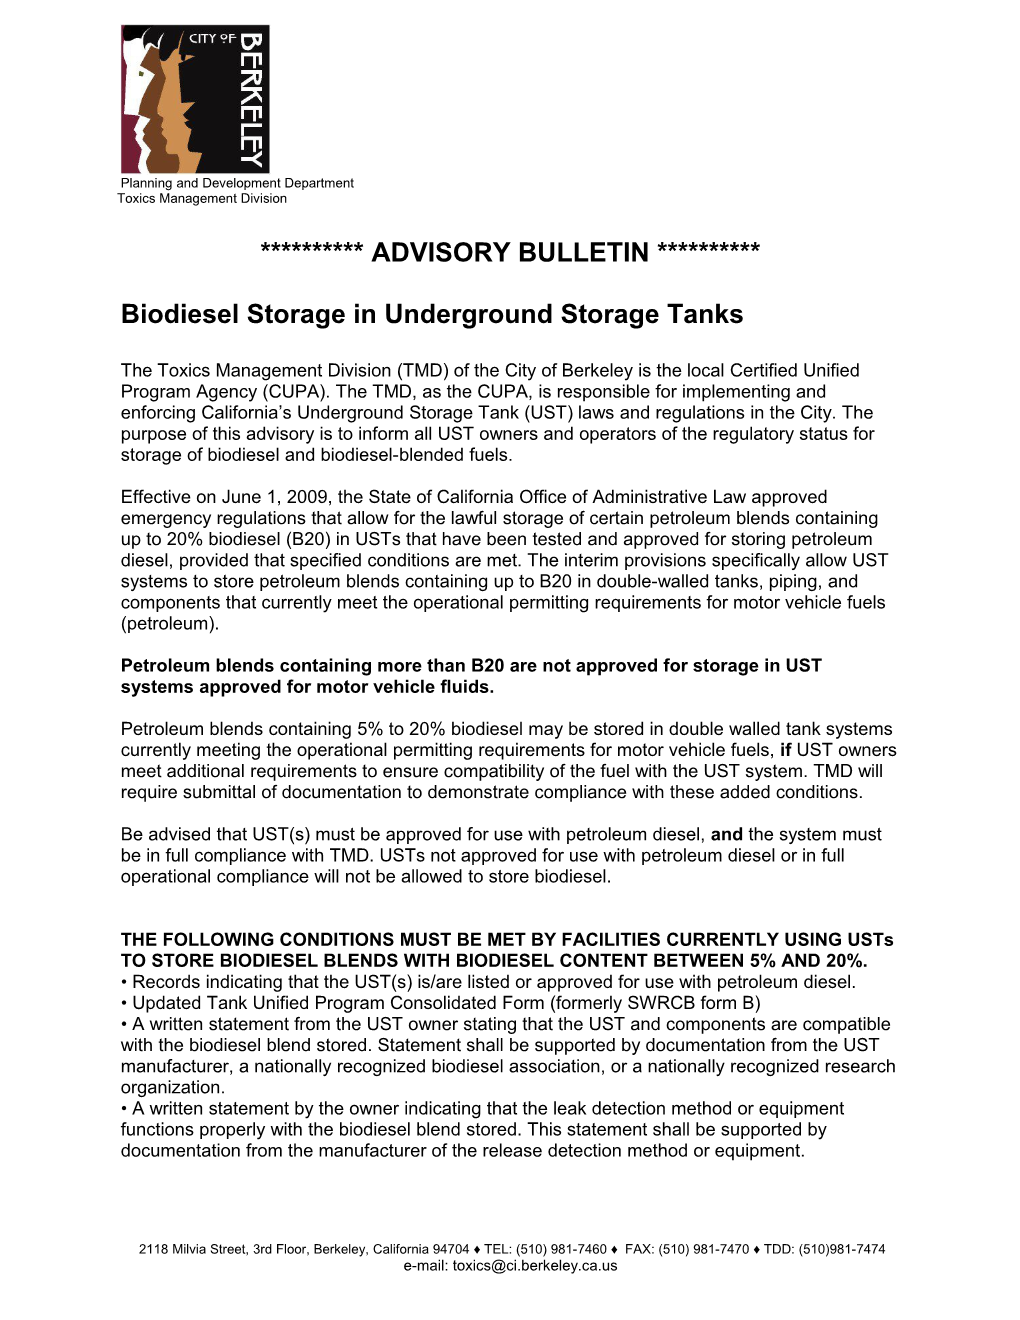 Biodiesel Storage in Underground Storage Tanks